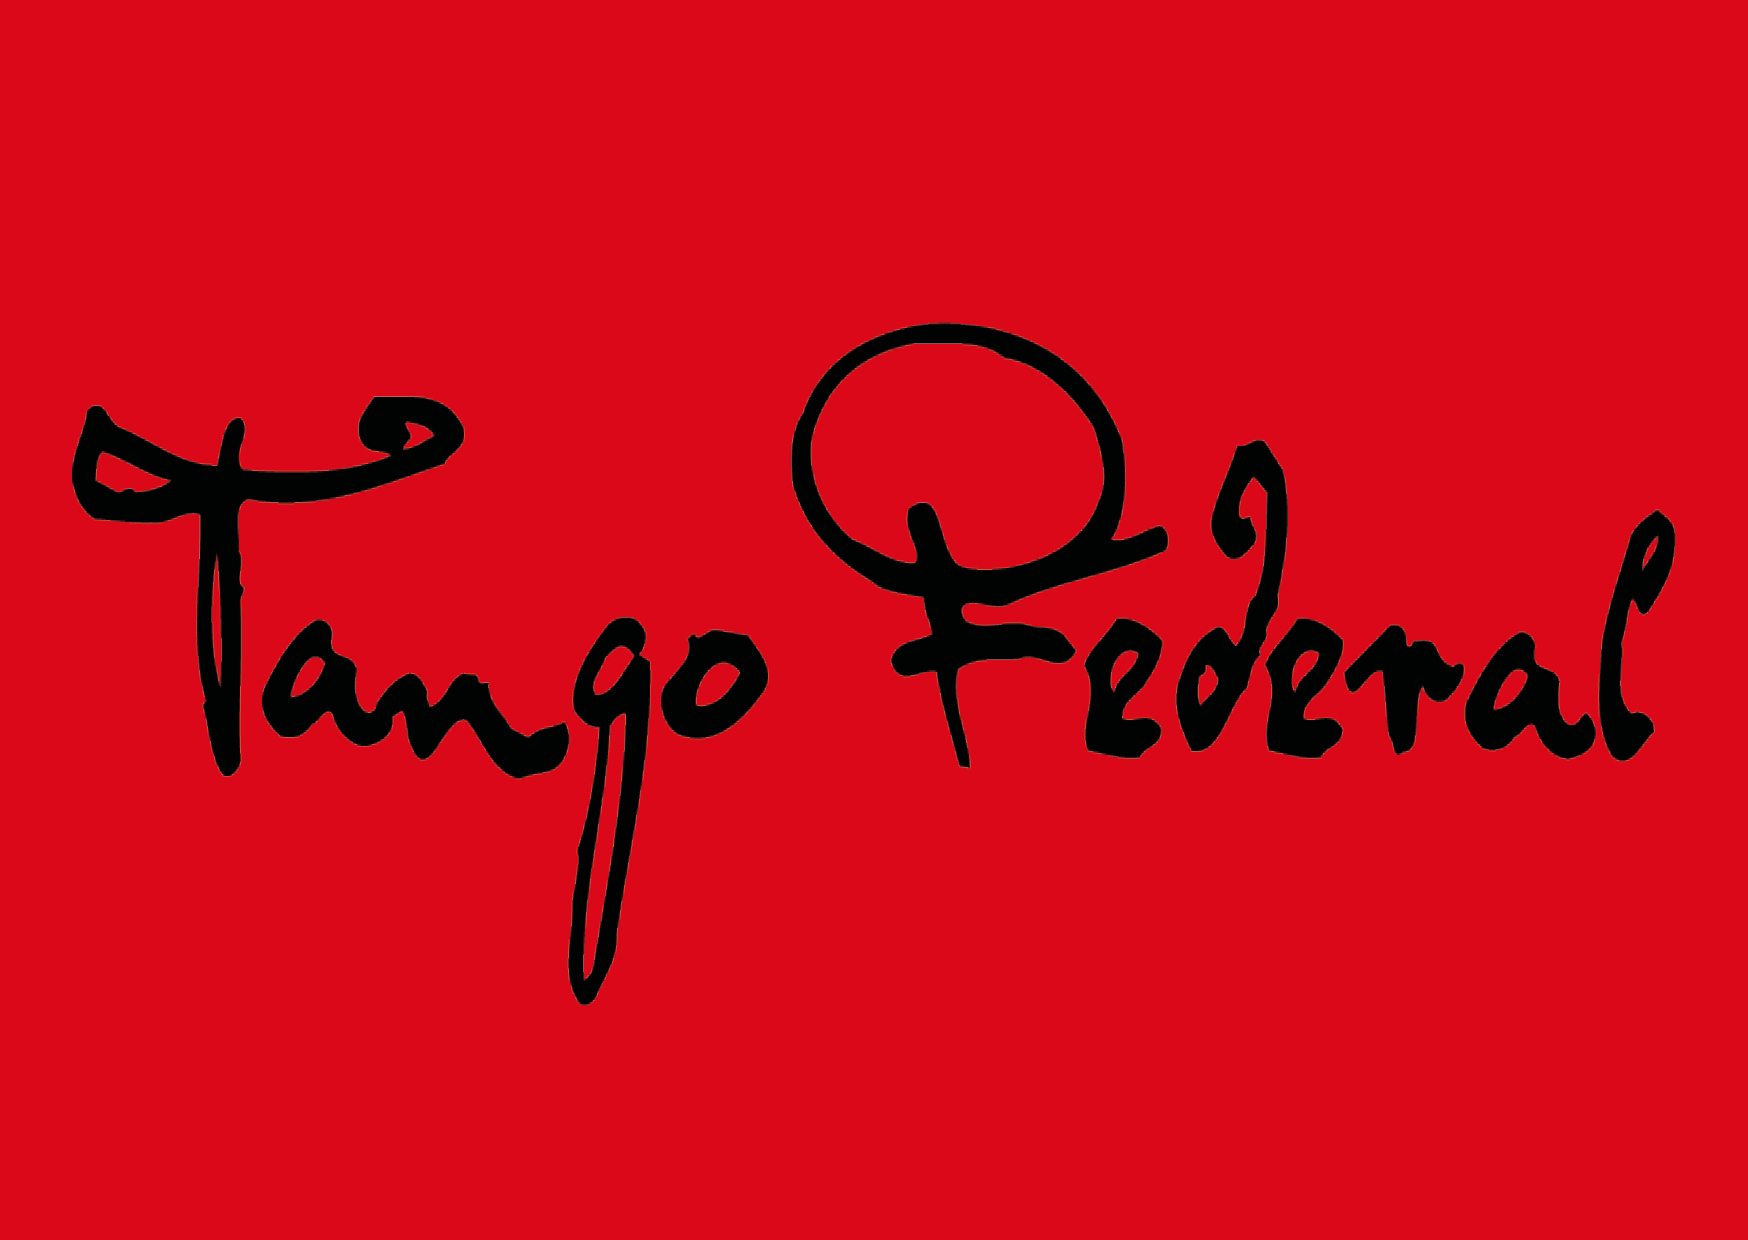 Live Milonga mit Tango Federal Septeto & special guest Olga(vocal)